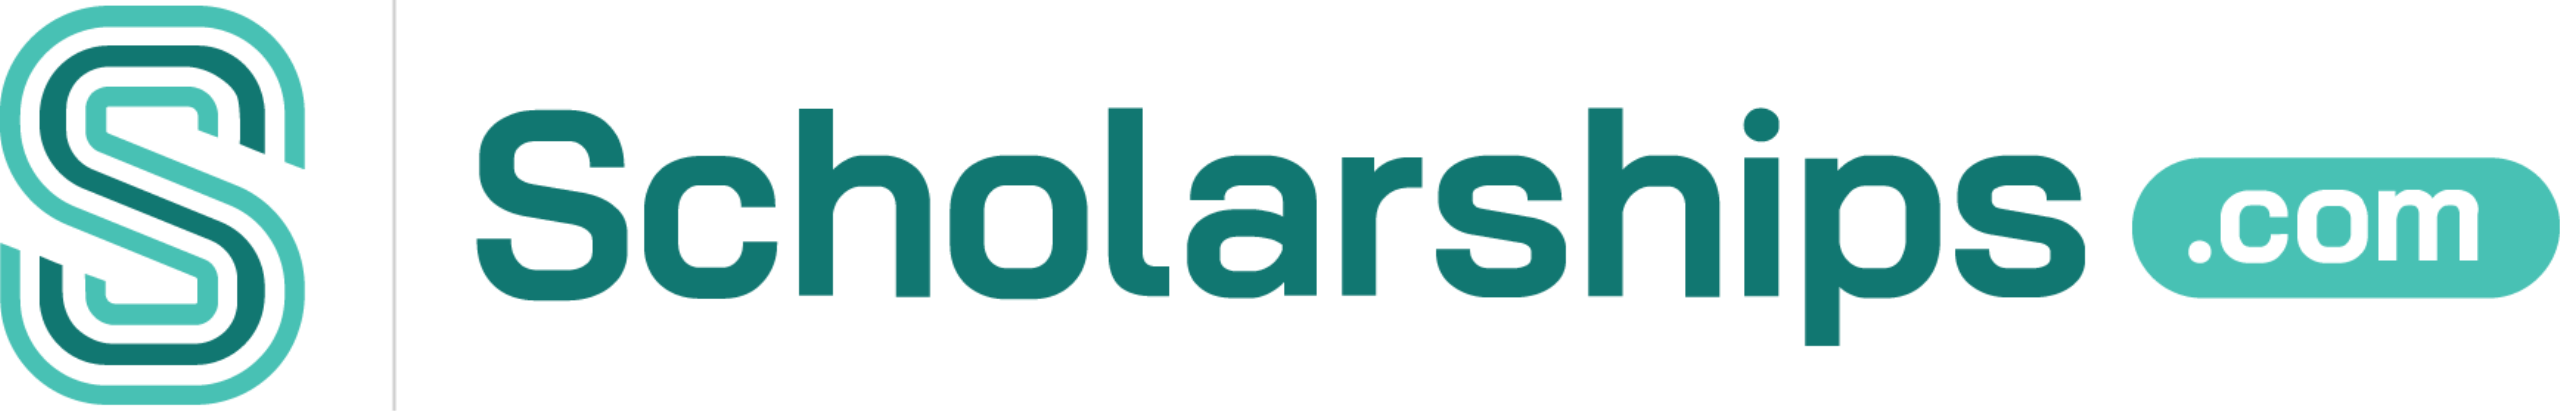 Scholarships.com, LLC Logo